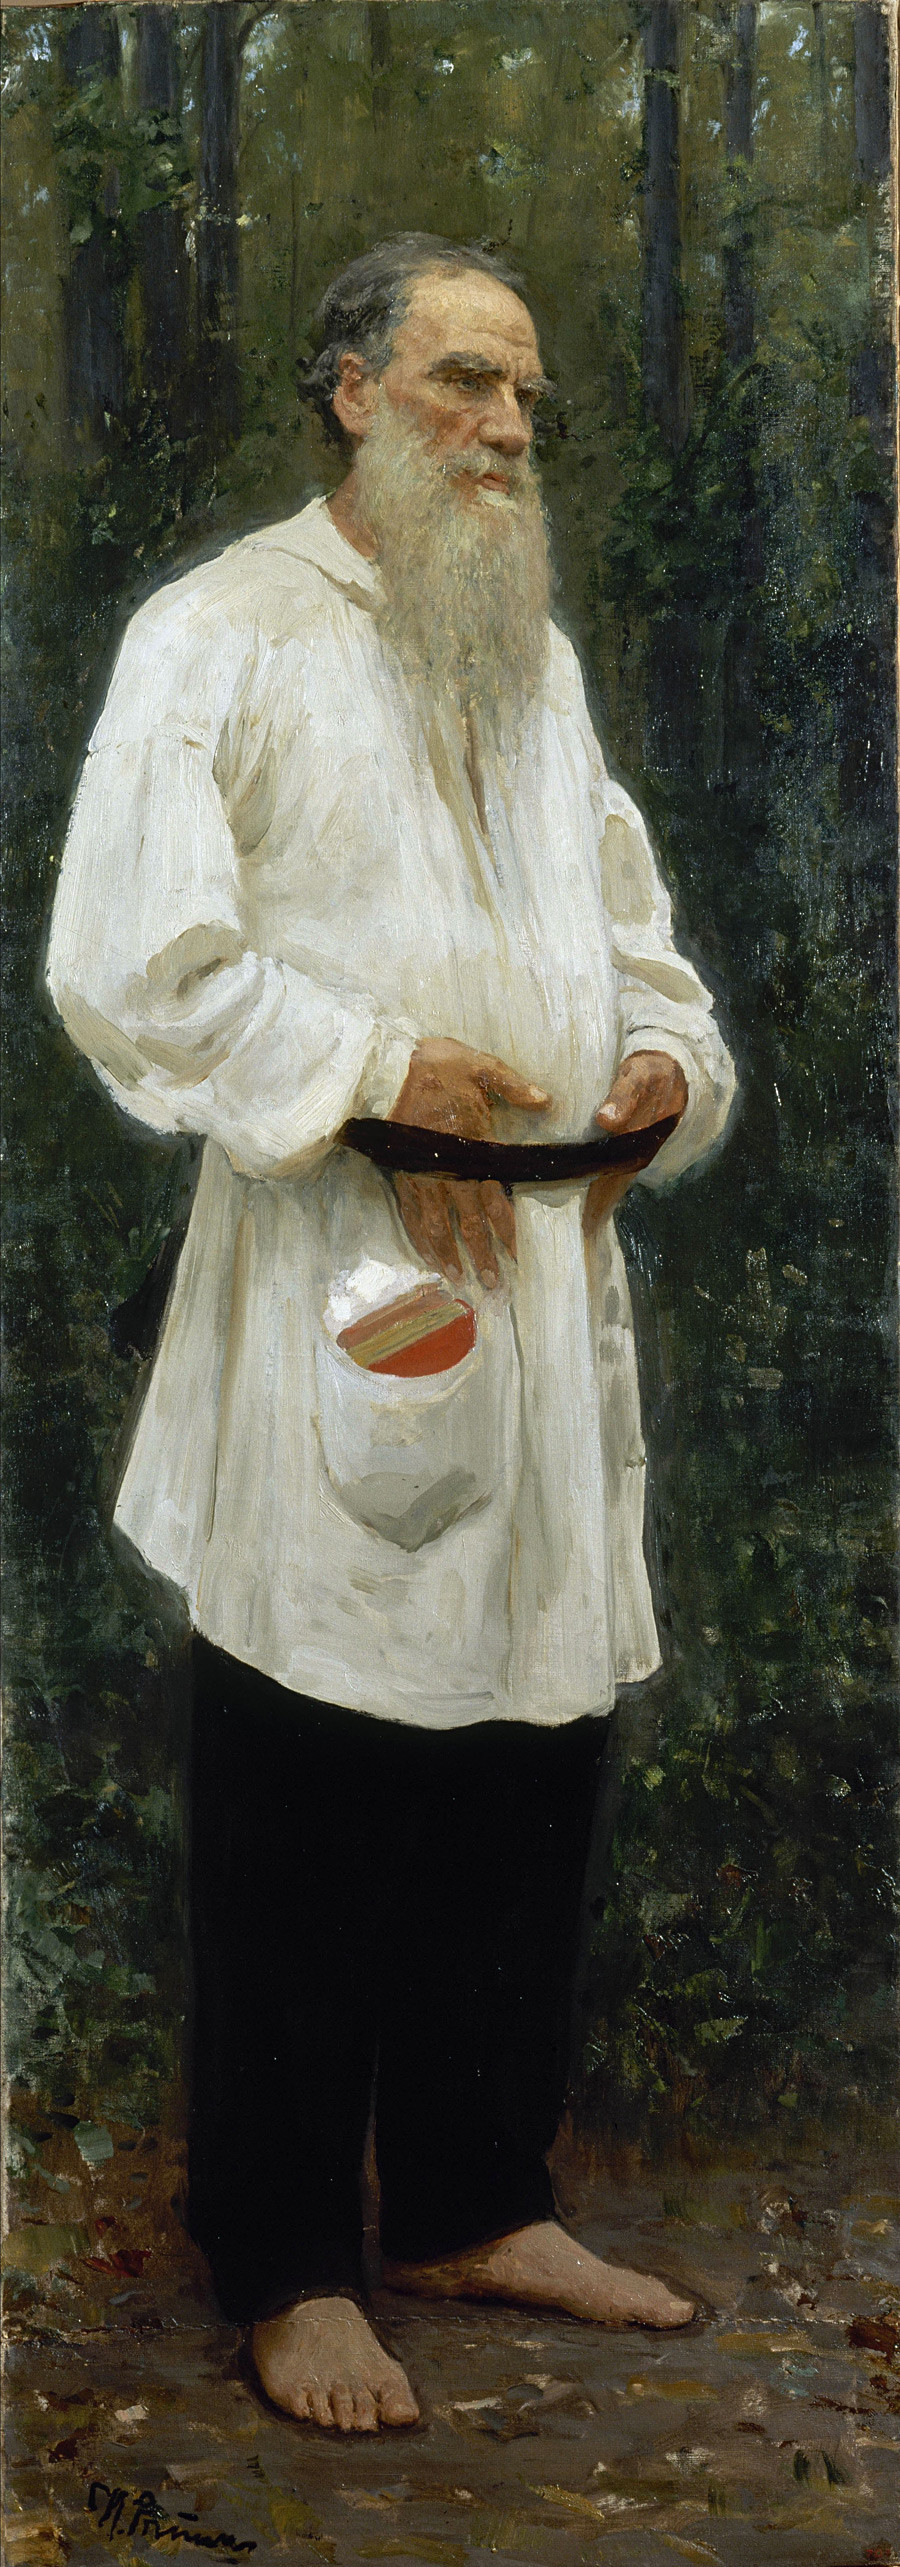 『裸足のトルストイ』、1901年